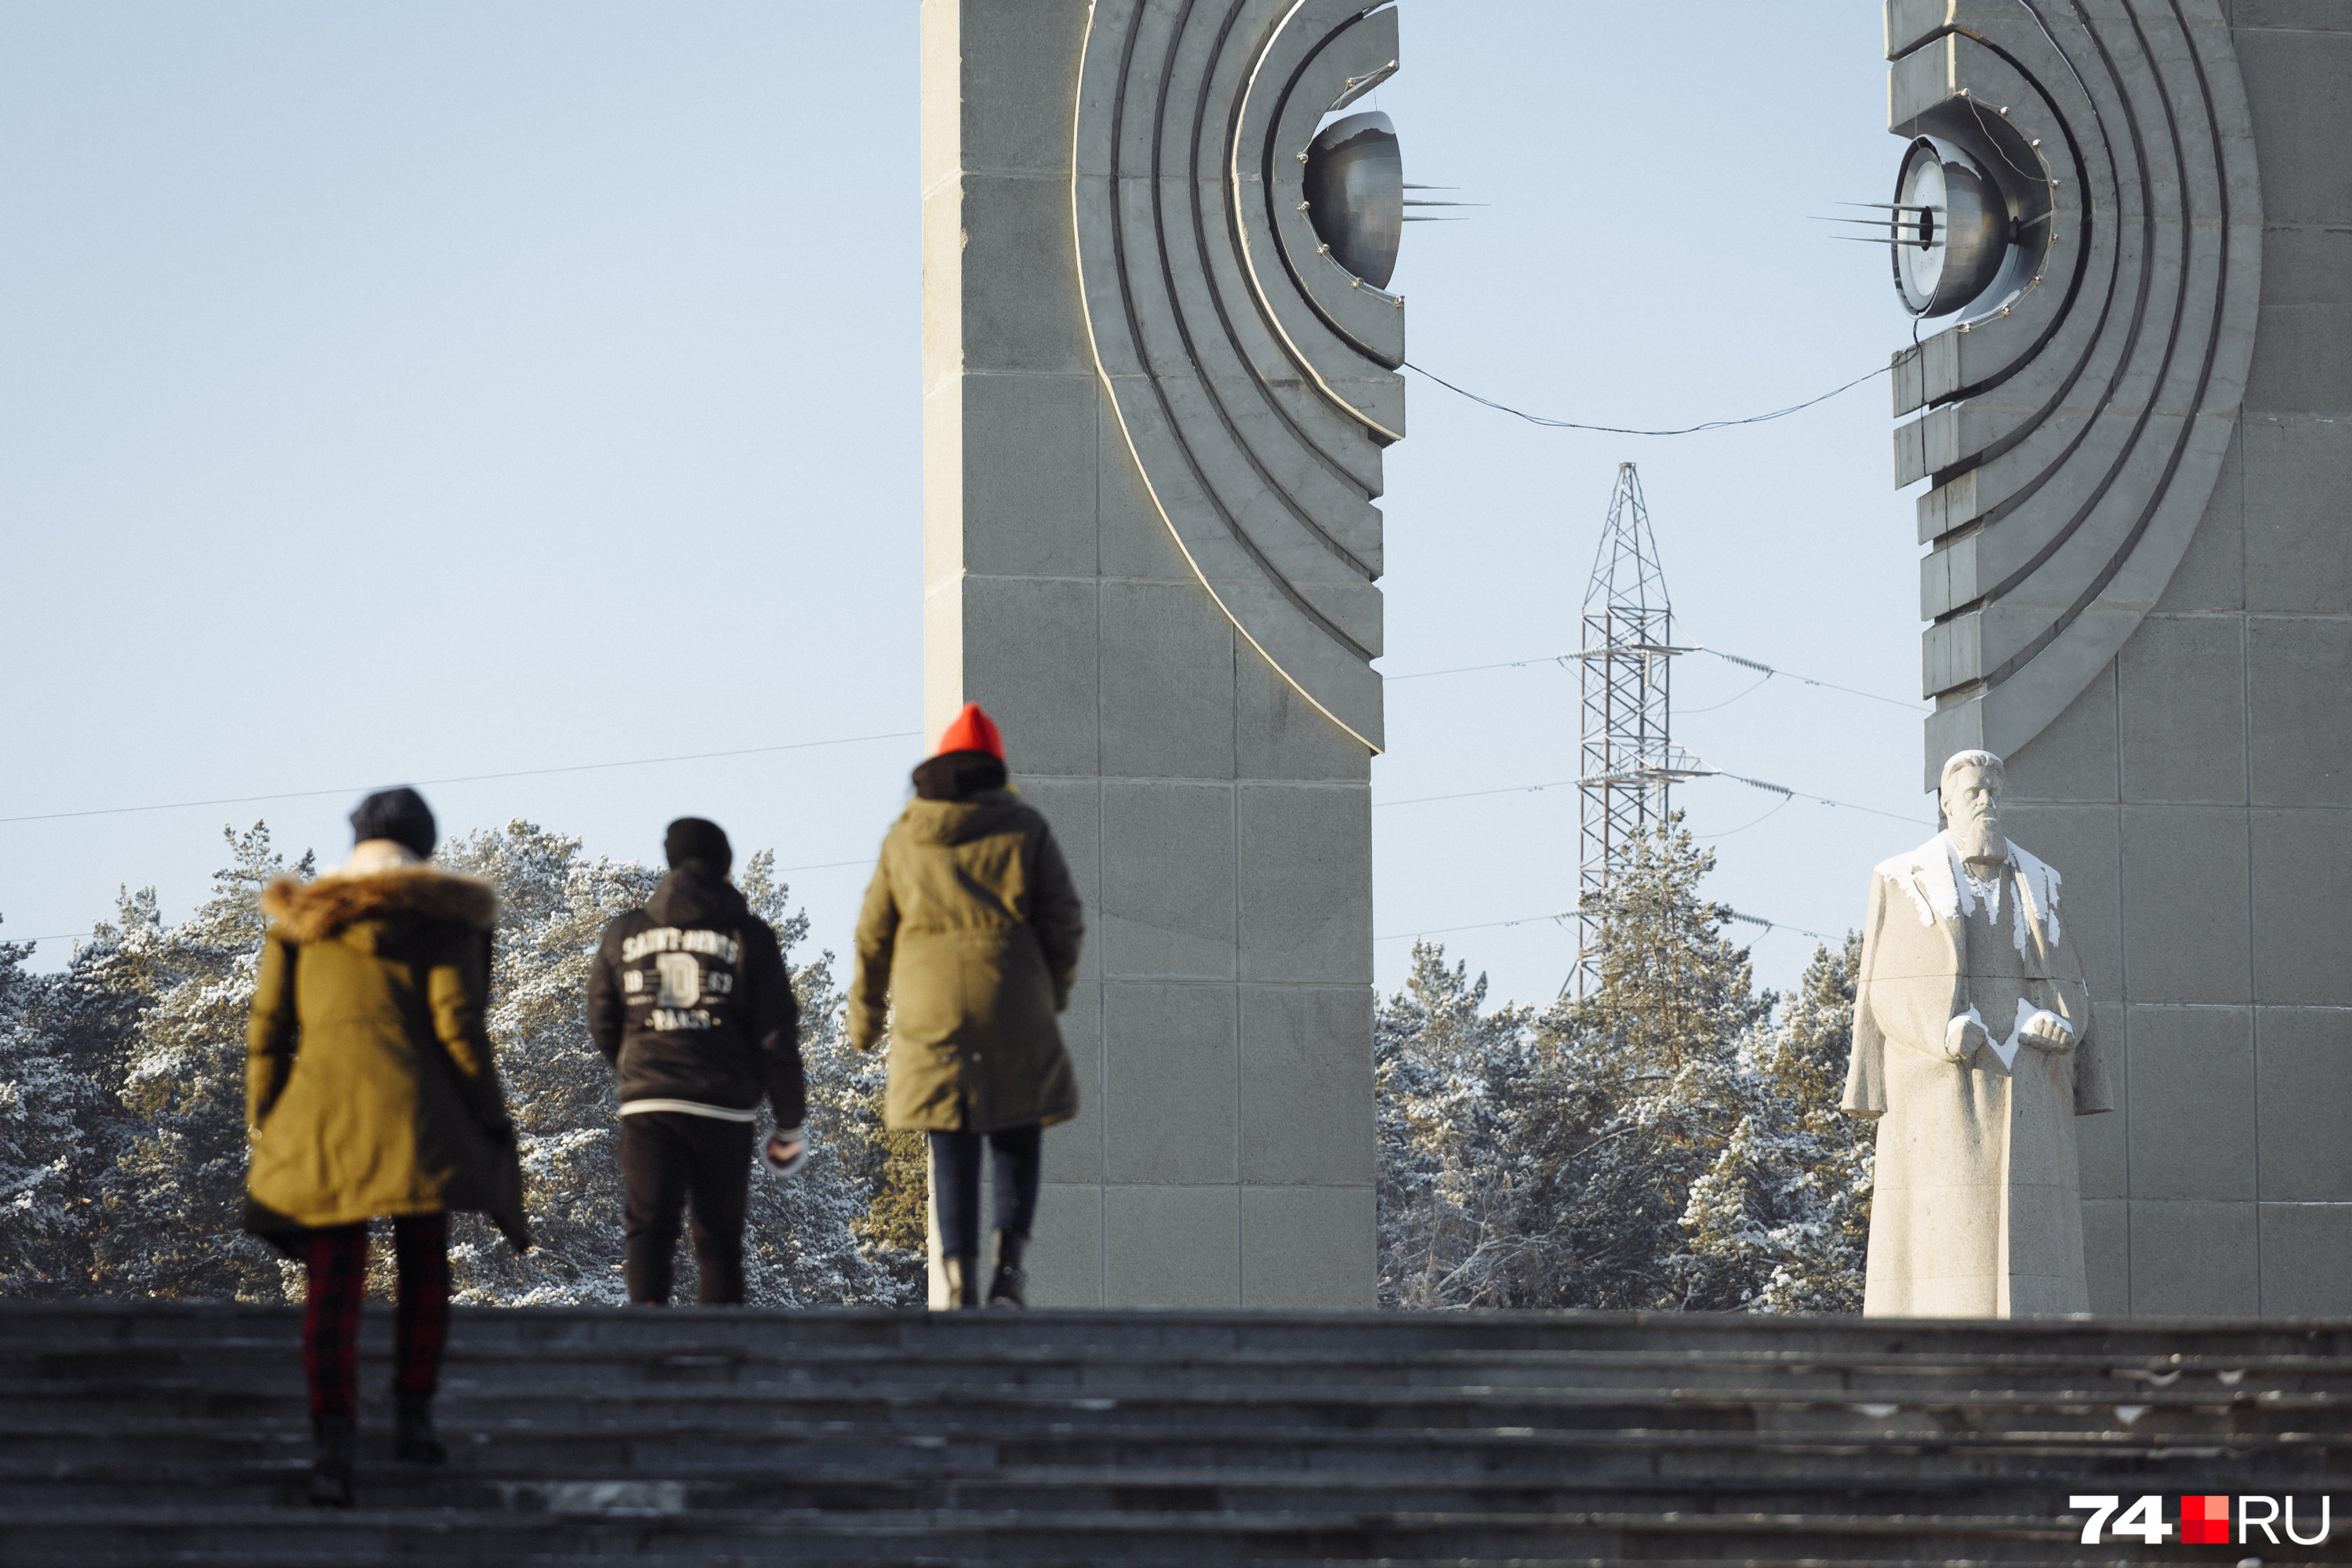 Площадь у памятника Курчатову — место притяжения городской молодежи